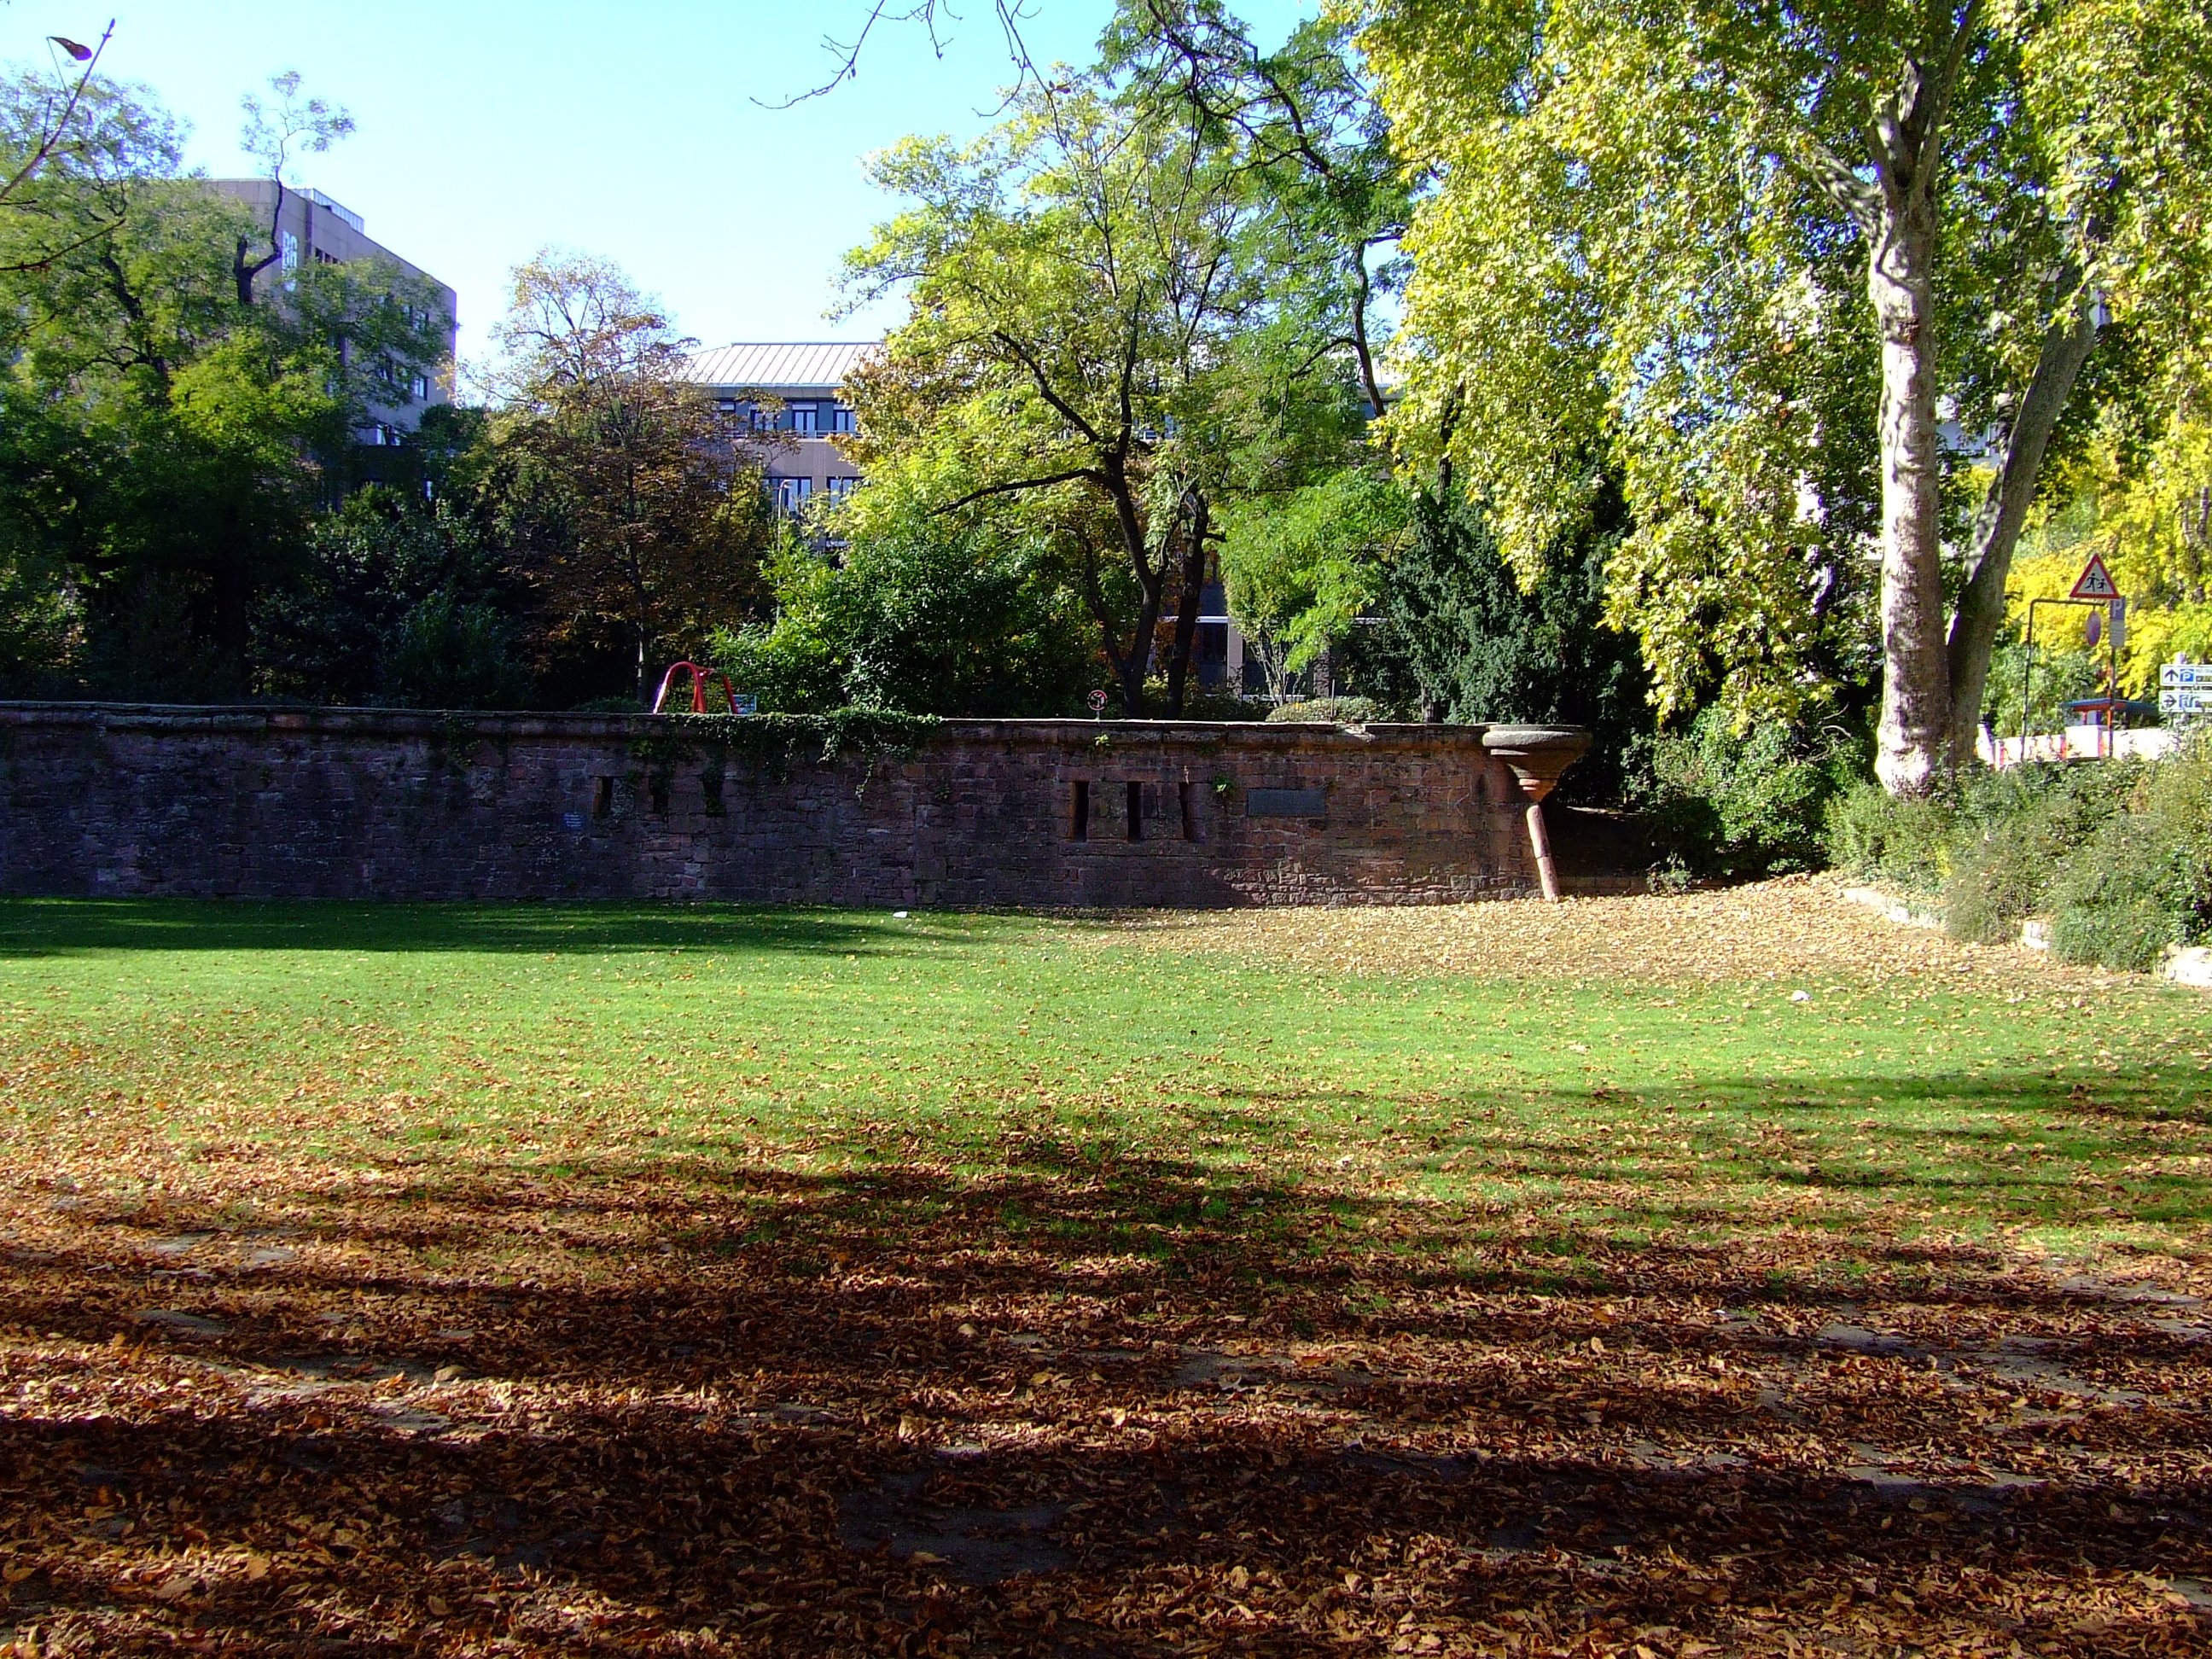 Mauern der alten Festung